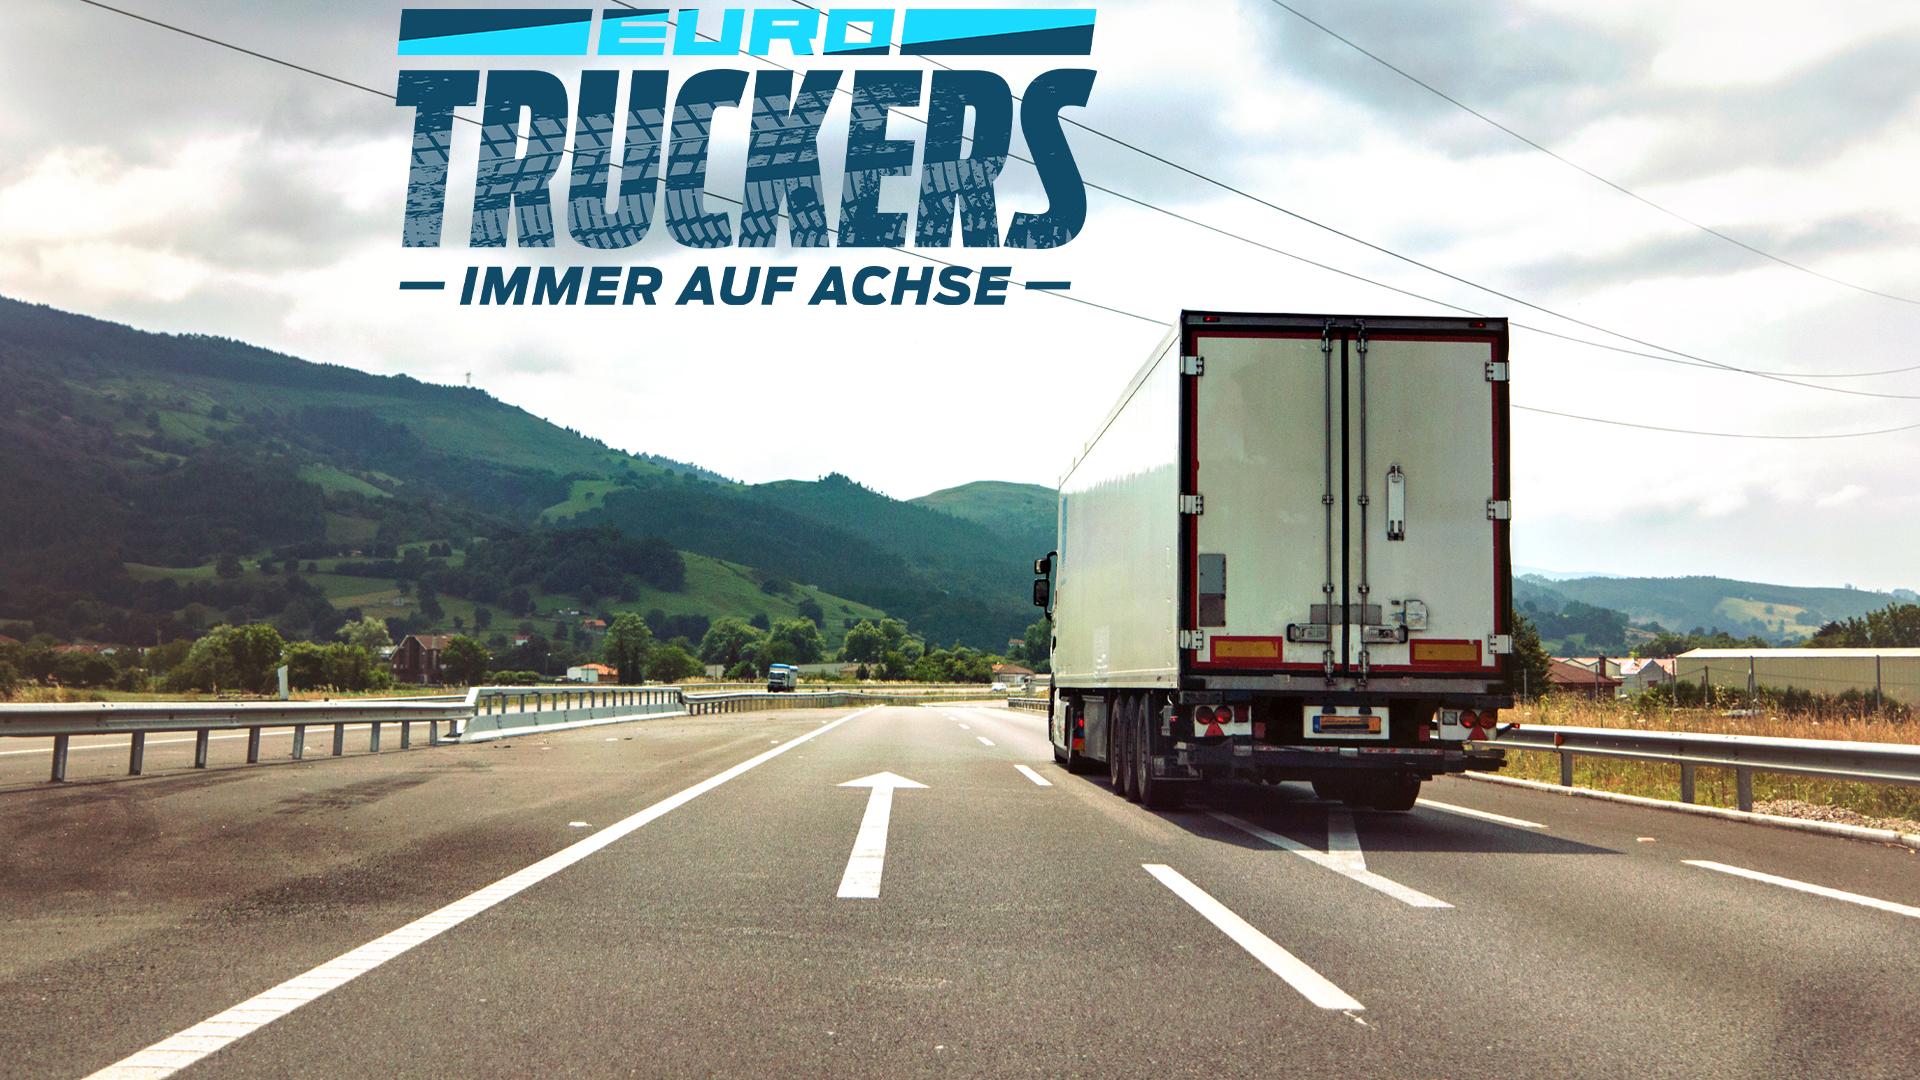 euro-truckers-immer-auf-achse-kostenlos-online-sehen-dmax